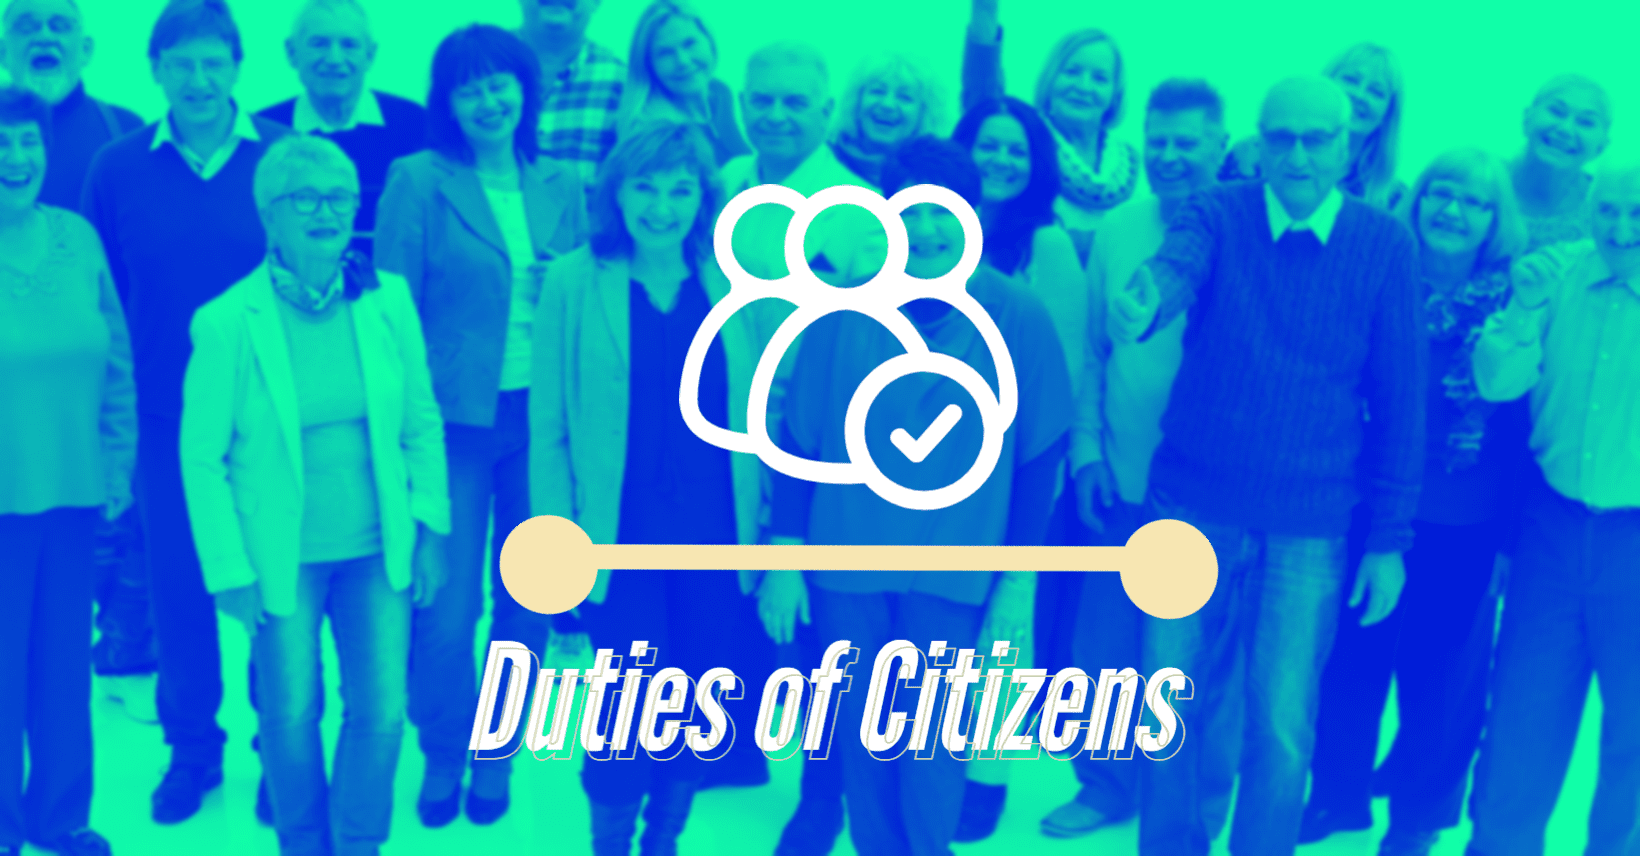 Duties of citizens